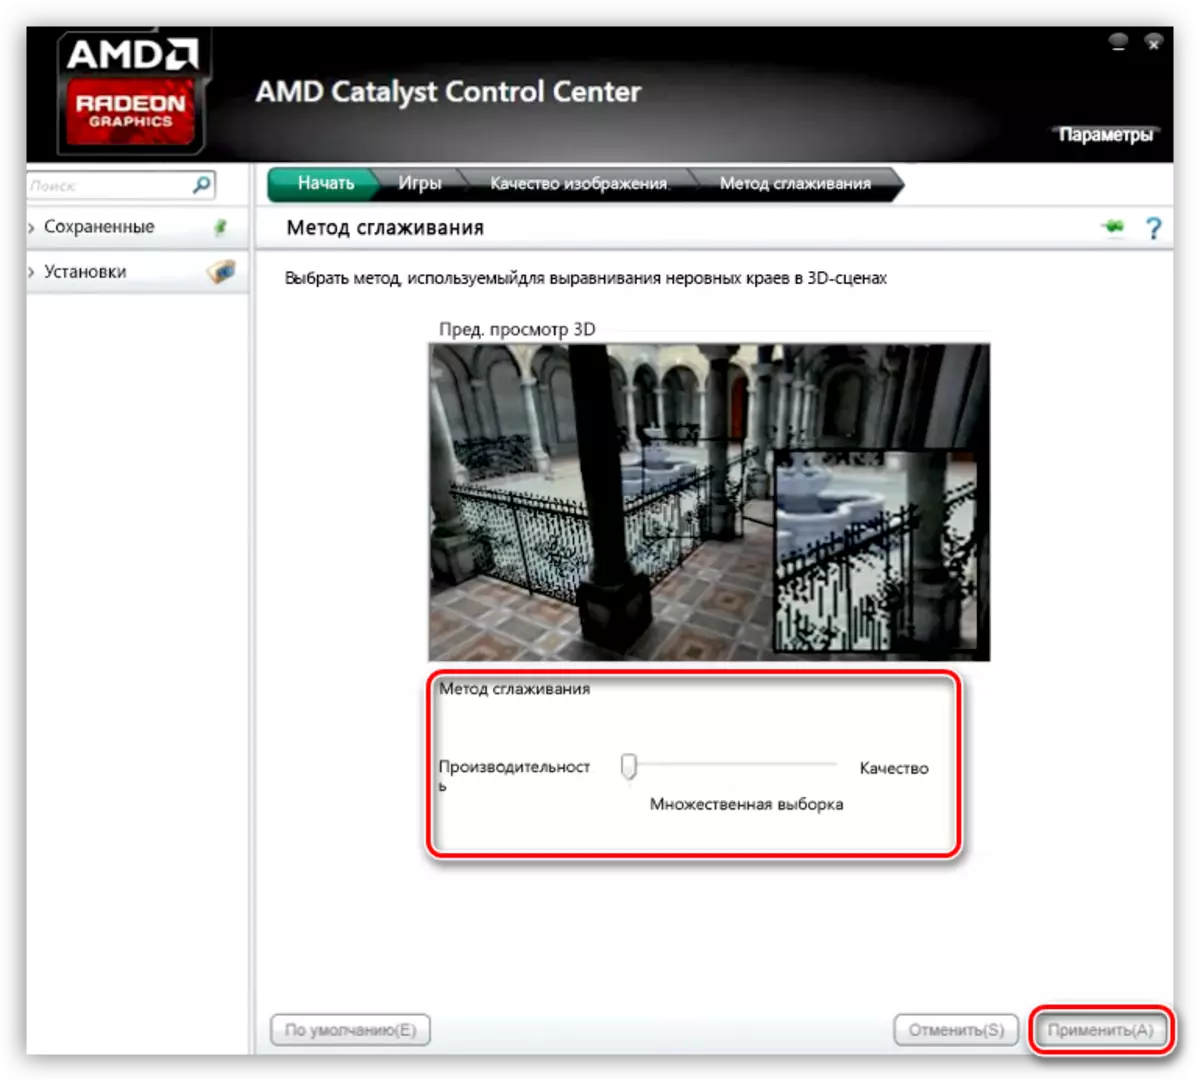 AMD ویڈیو کارڈ کی ترتیبات میں Smoothing طریقہ قائم کرنا